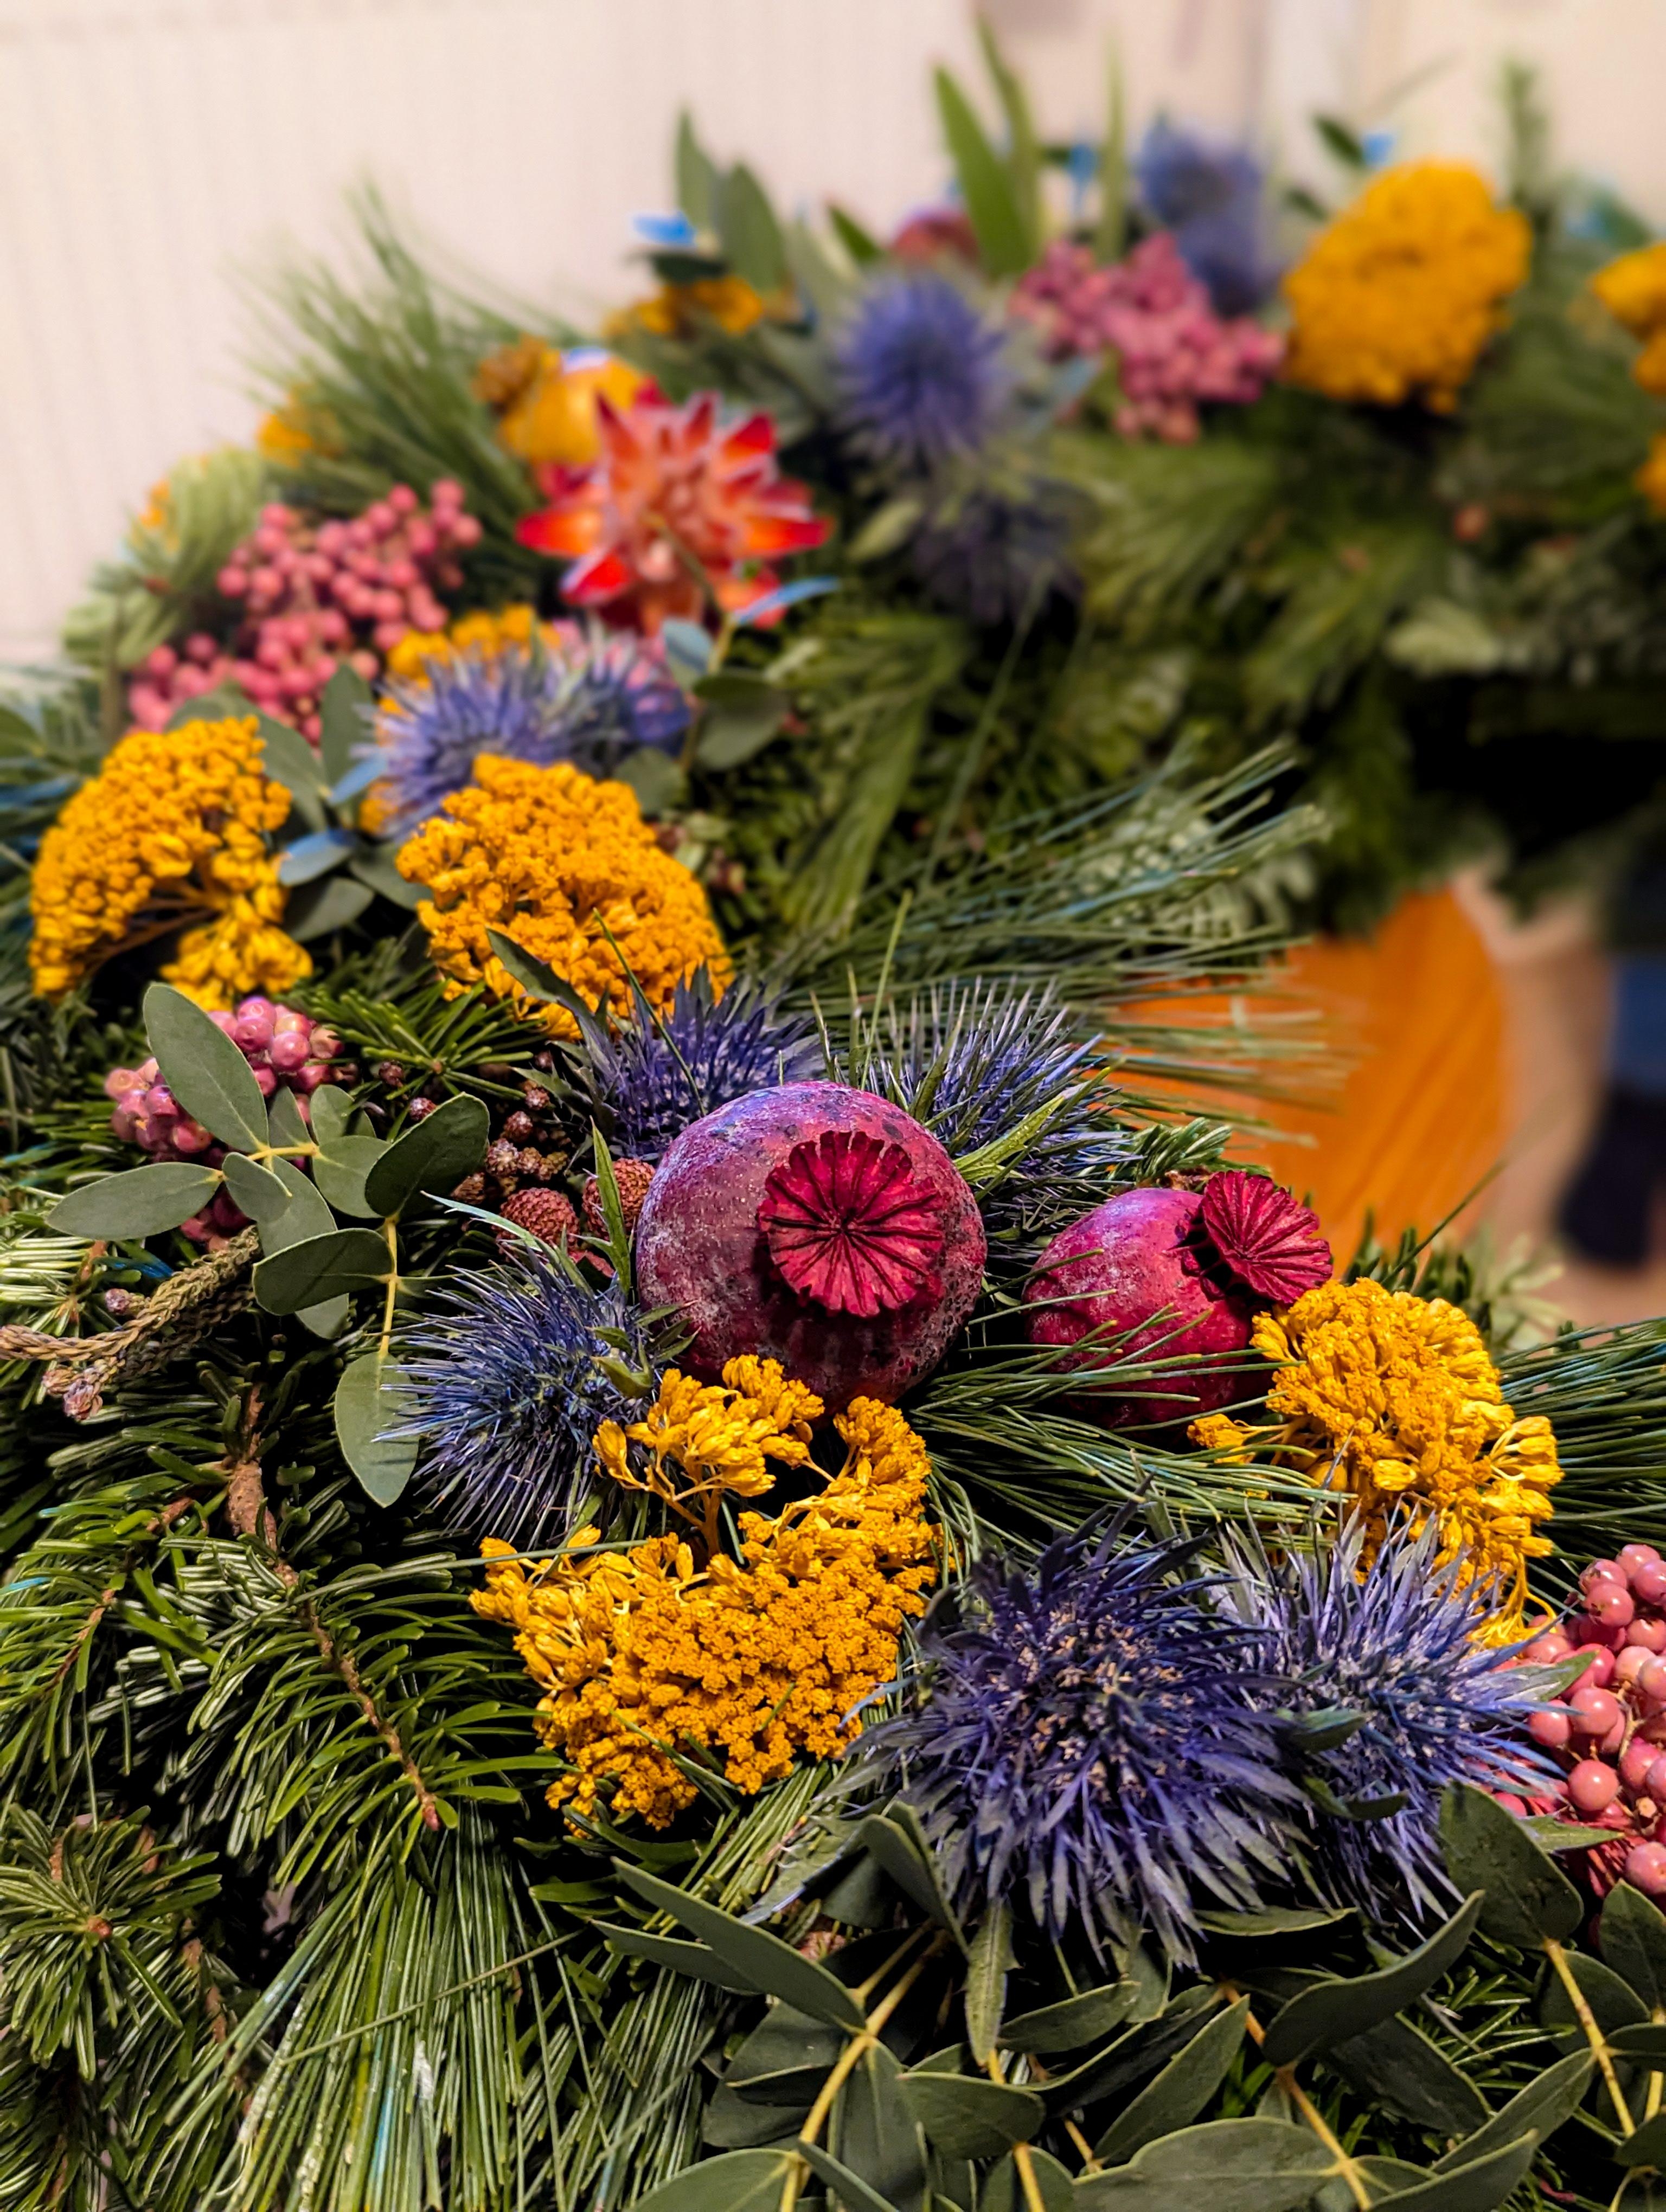 Kranz binden
#advent #adventskranz #wreath #wreathmaking 